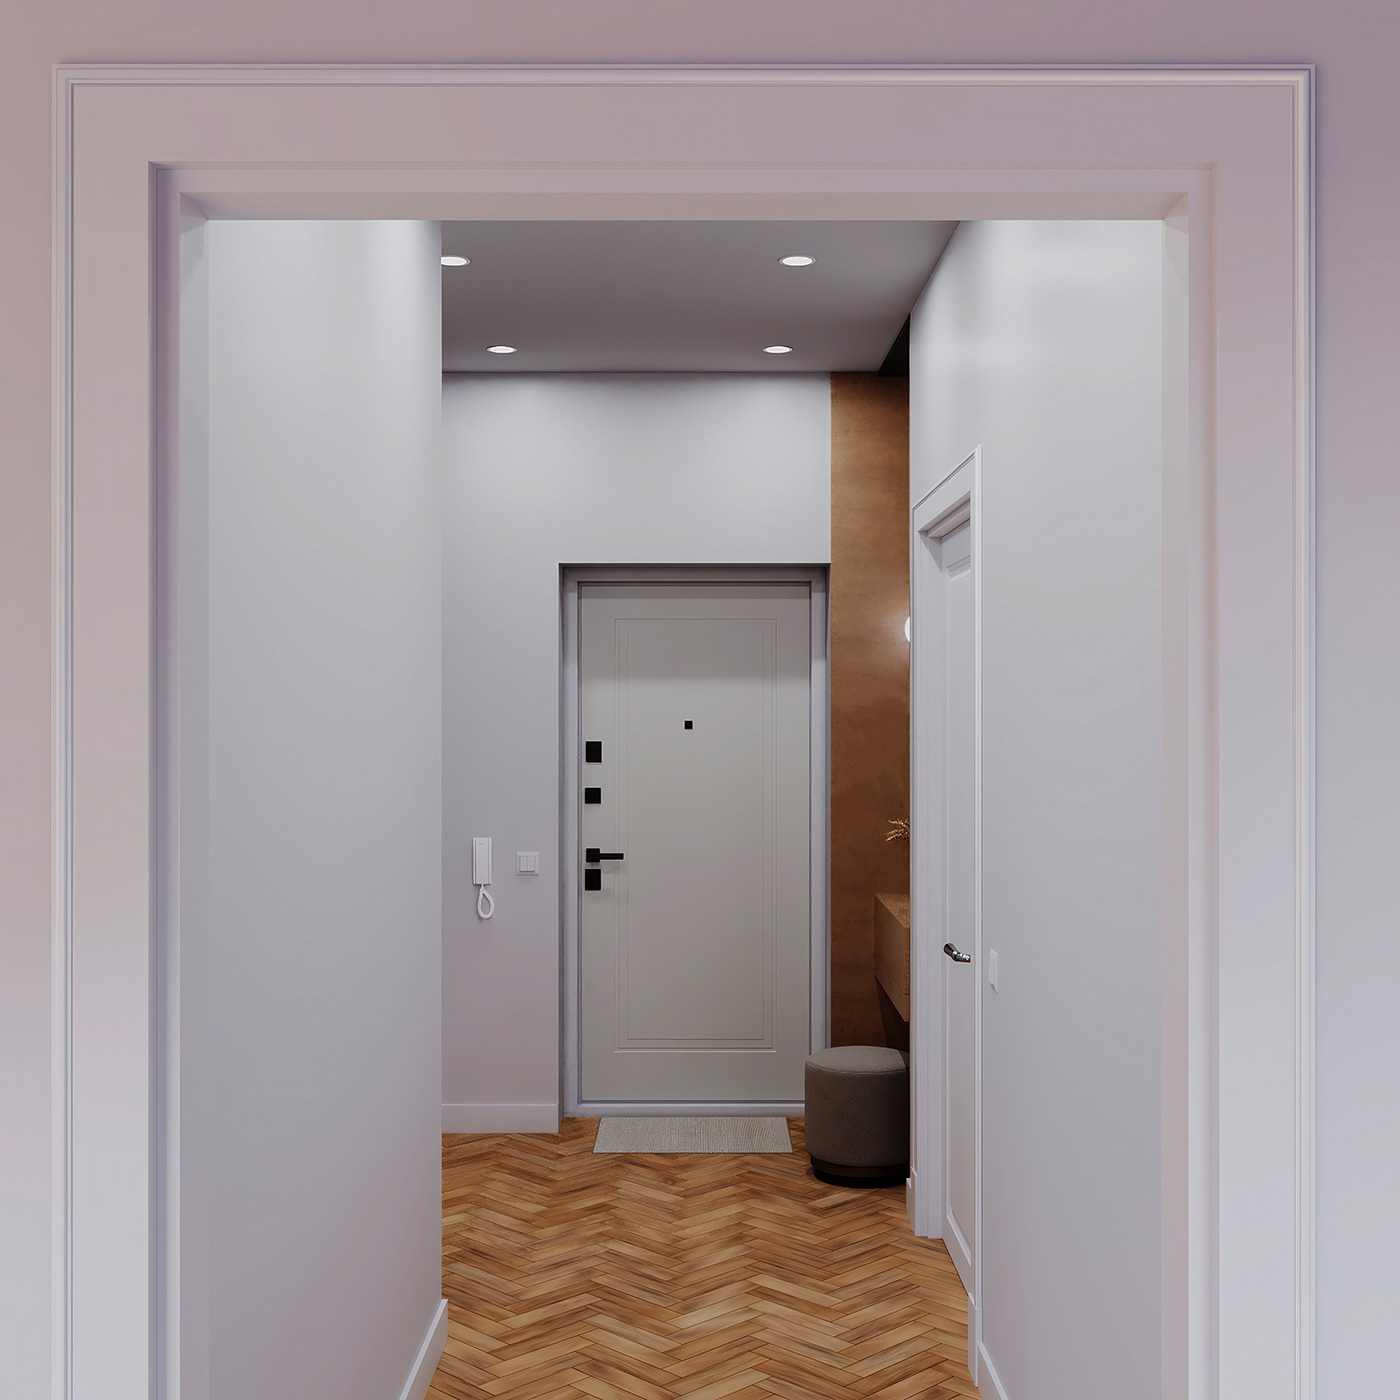 interior design  Interior design прихожая гардеробная дизайн дизайн интерьера интерьер 3D гардеро